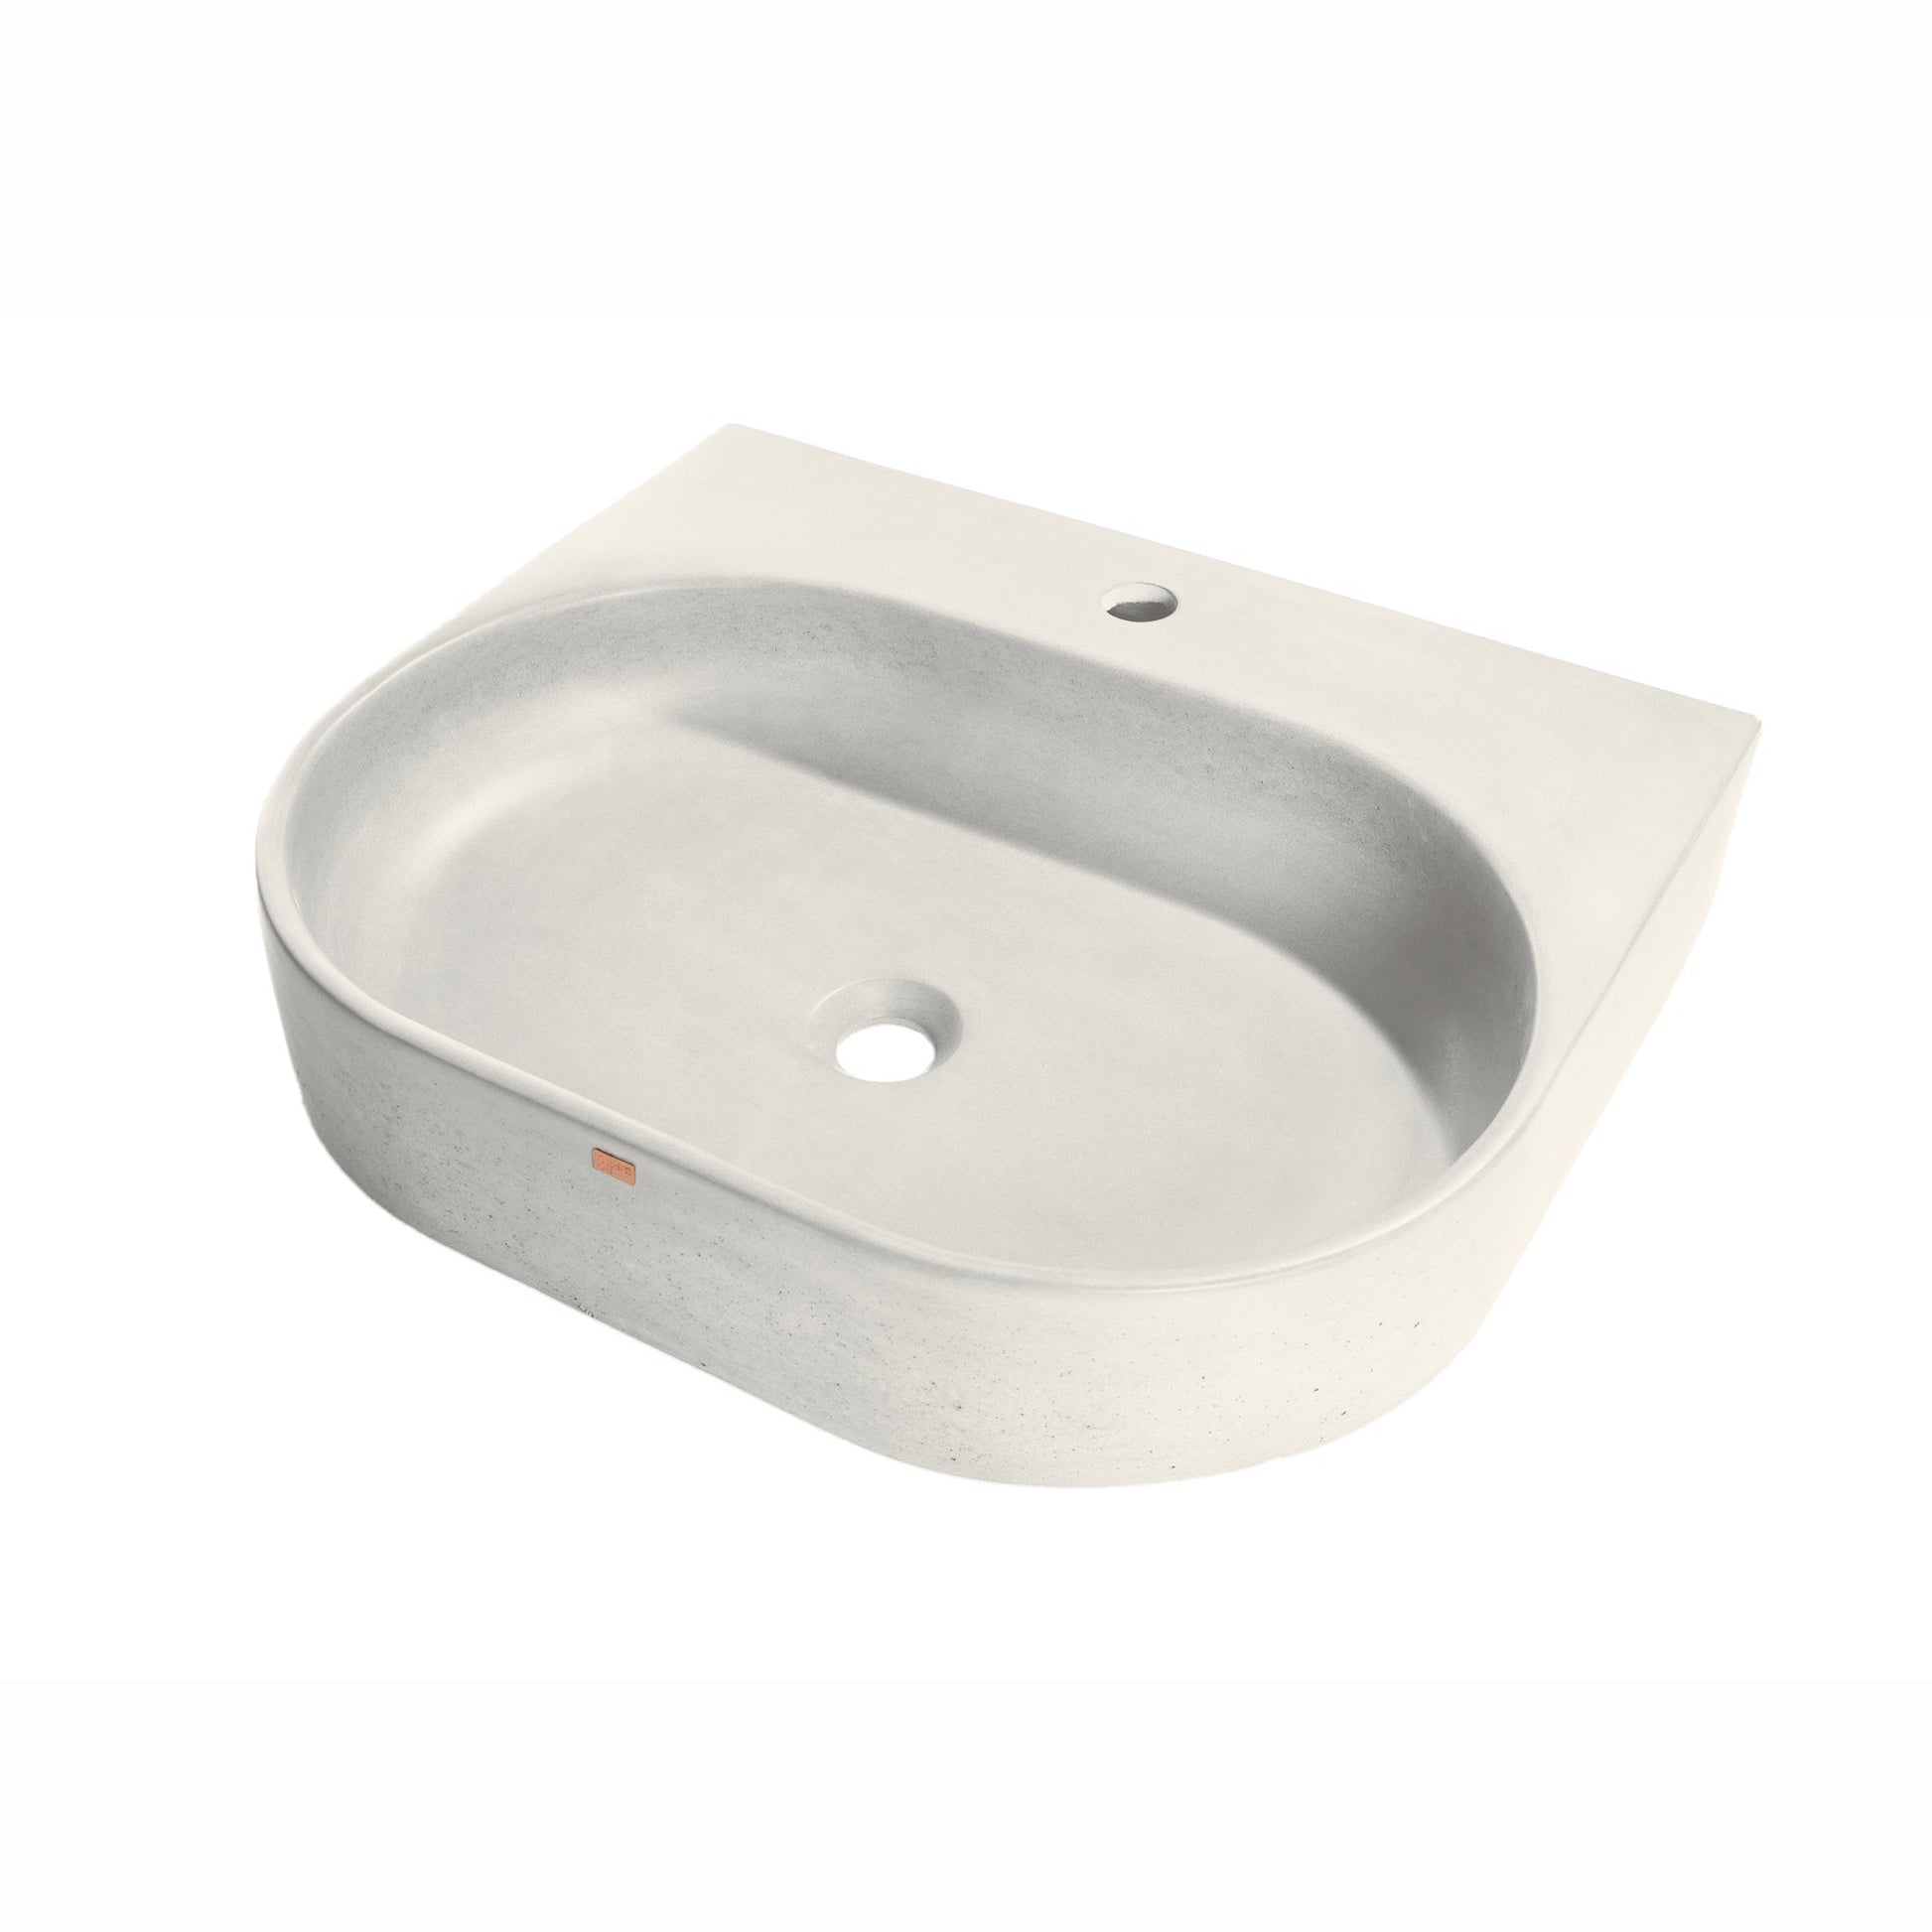 Konkretus Bahia02 22" Shadow Gray Wall-Mounted Vessel Concrete Bathroom Sink